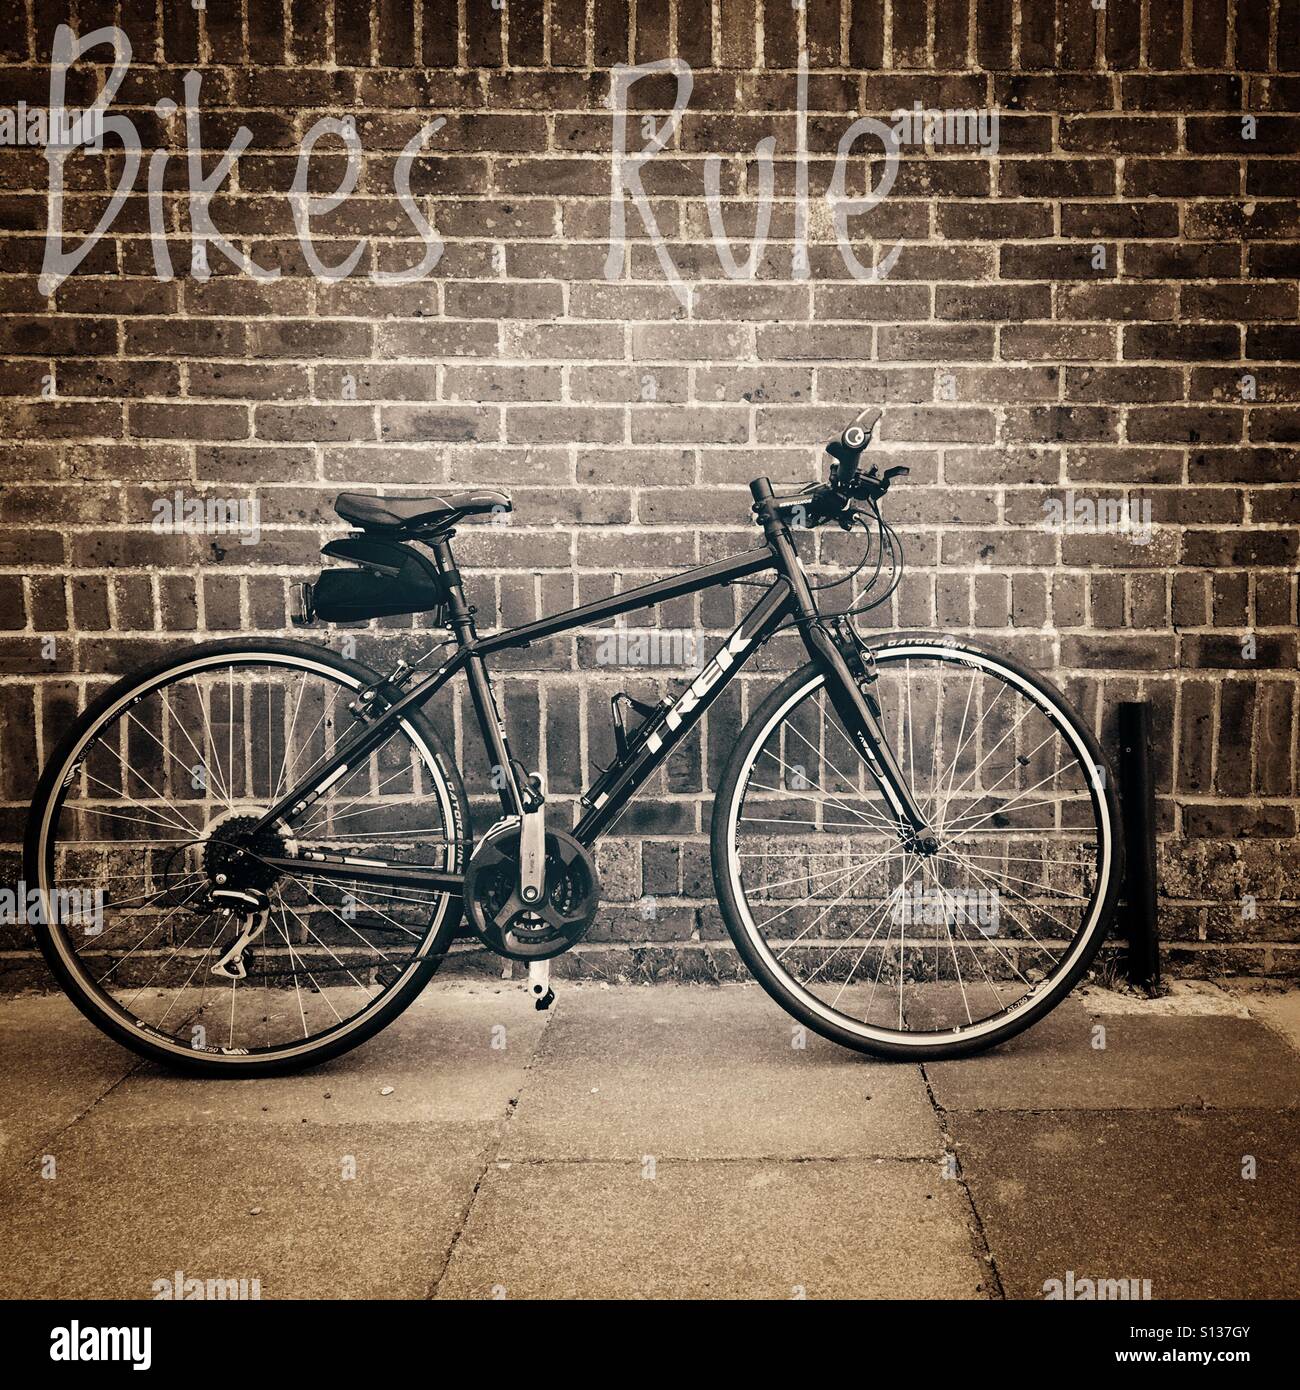 Bikes rule, flat bar street pub bike leaning against brick wall. Stock Photo